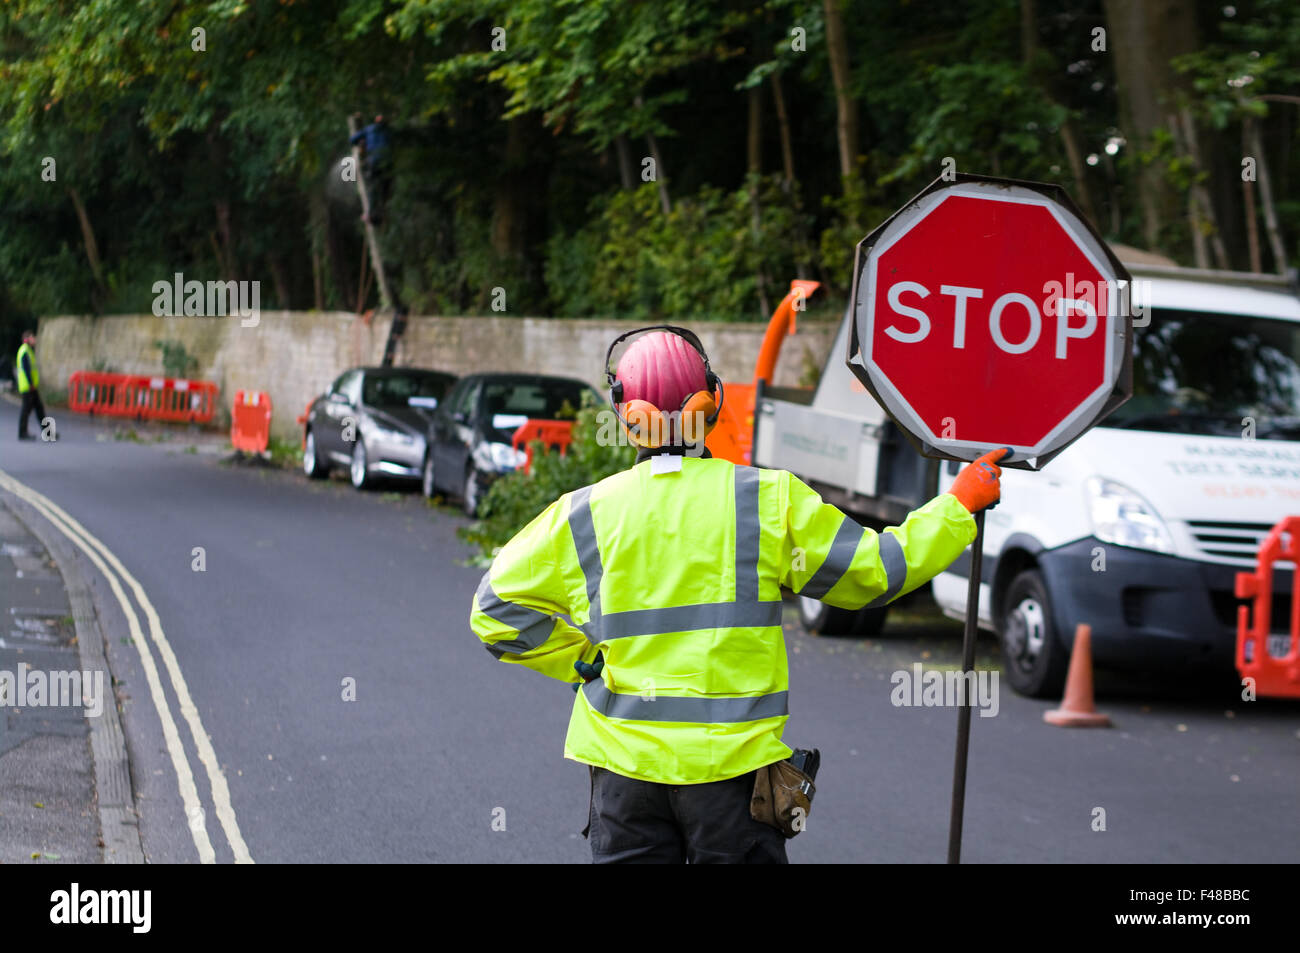 Ein Mann in eine hohe Sichtbarkeit Jacke hält ein "STOP" Kontrolle Verkehrszeichen, Verkehr zu kontrollieren, wie Mitarbeiter auf Baumschlagen arbeiten. Stockfoto